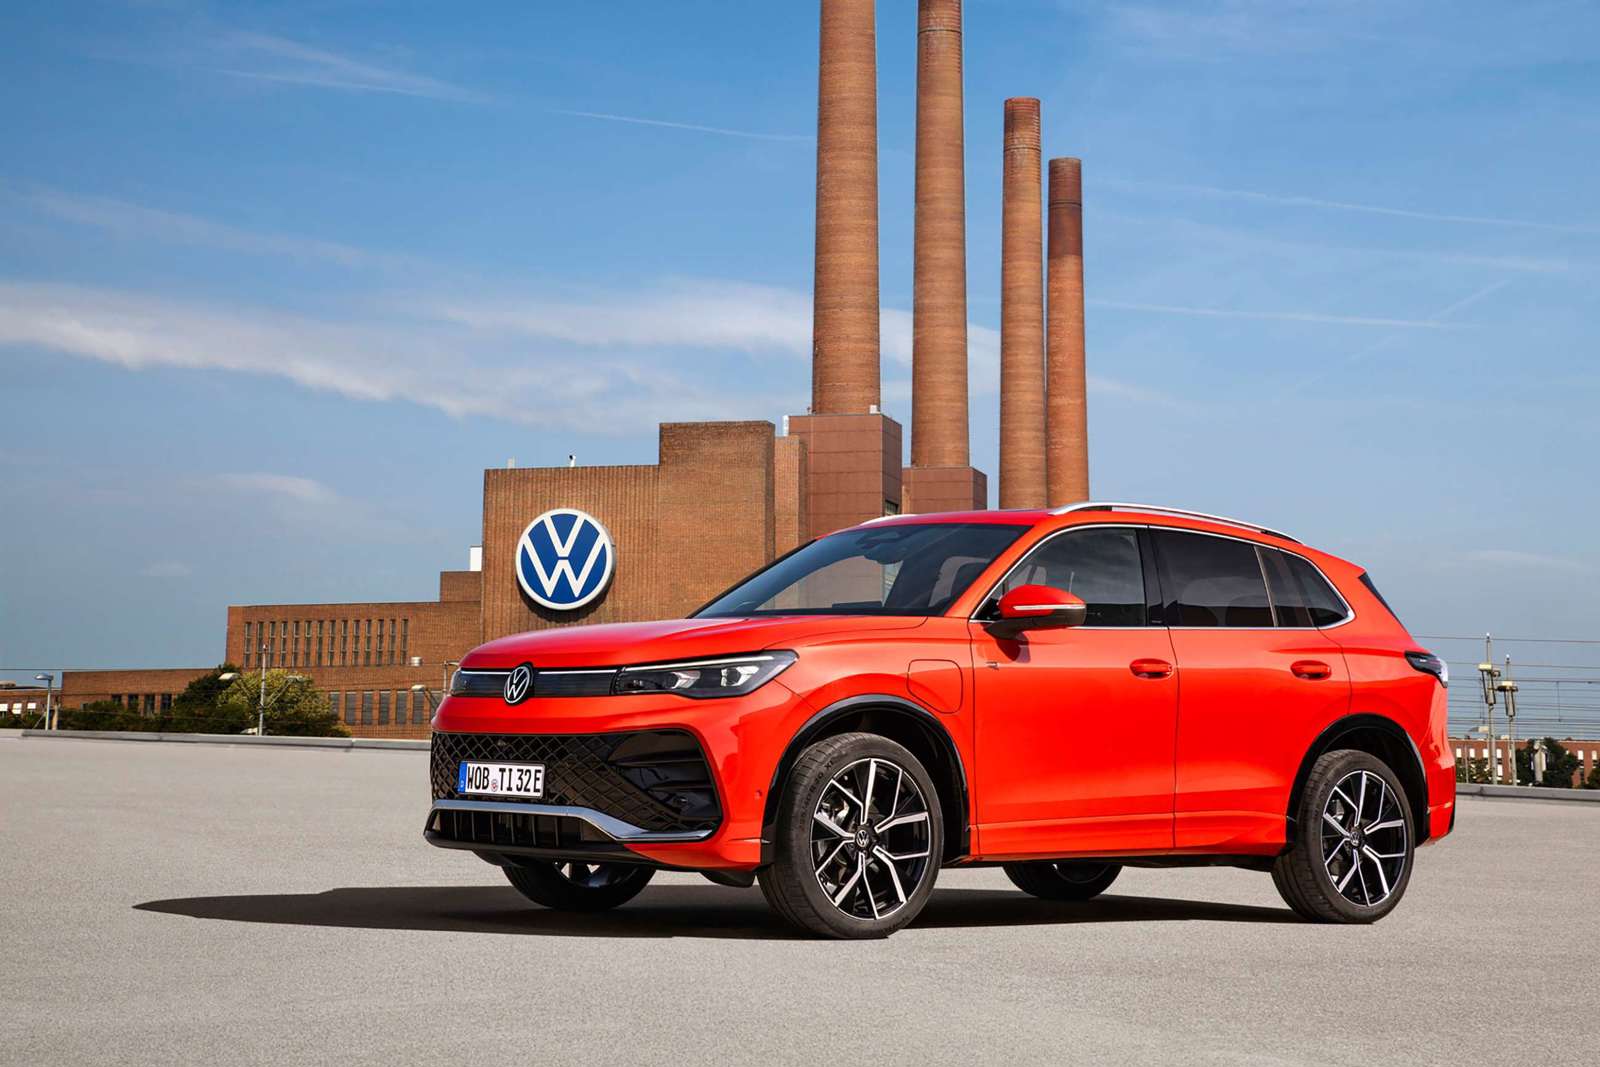 Volkswagen reveals new Tiguan